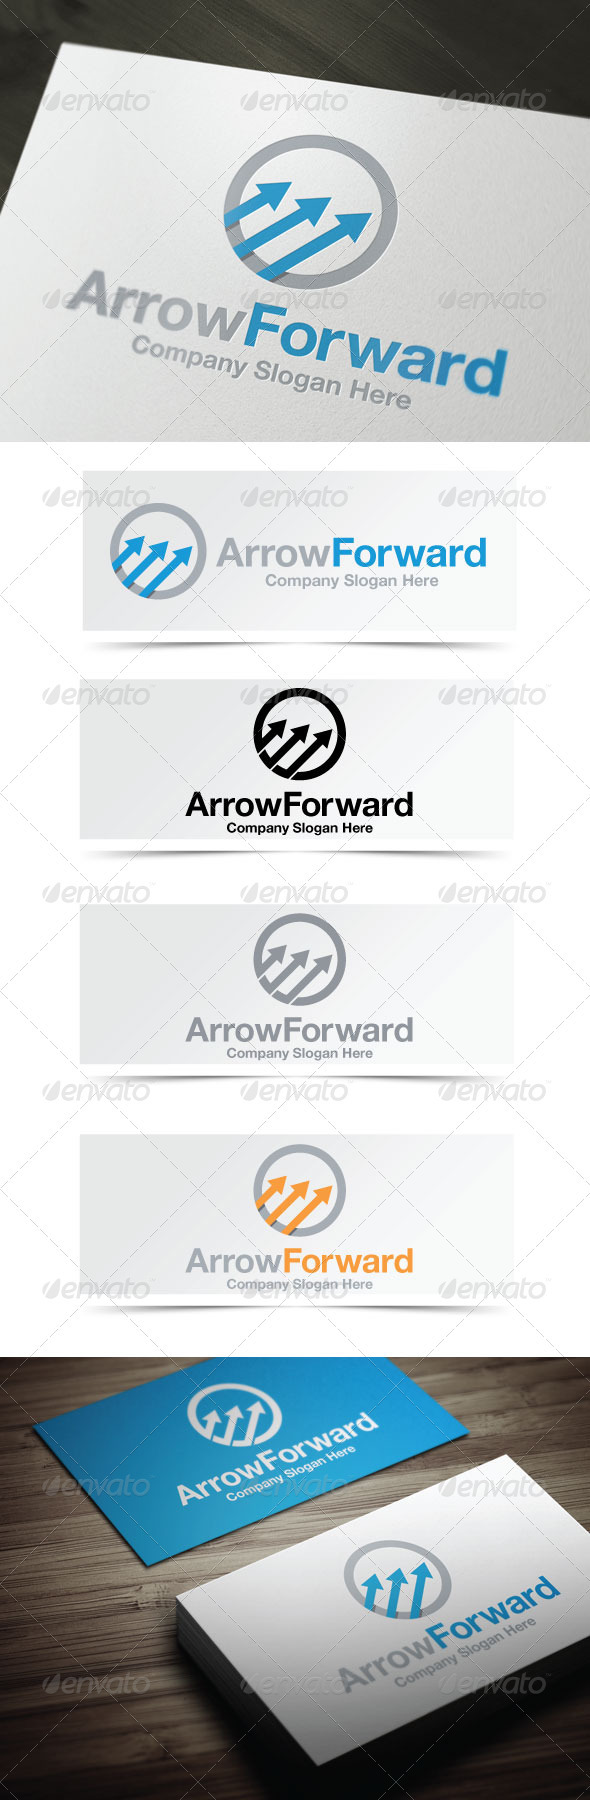 Arrow Forward